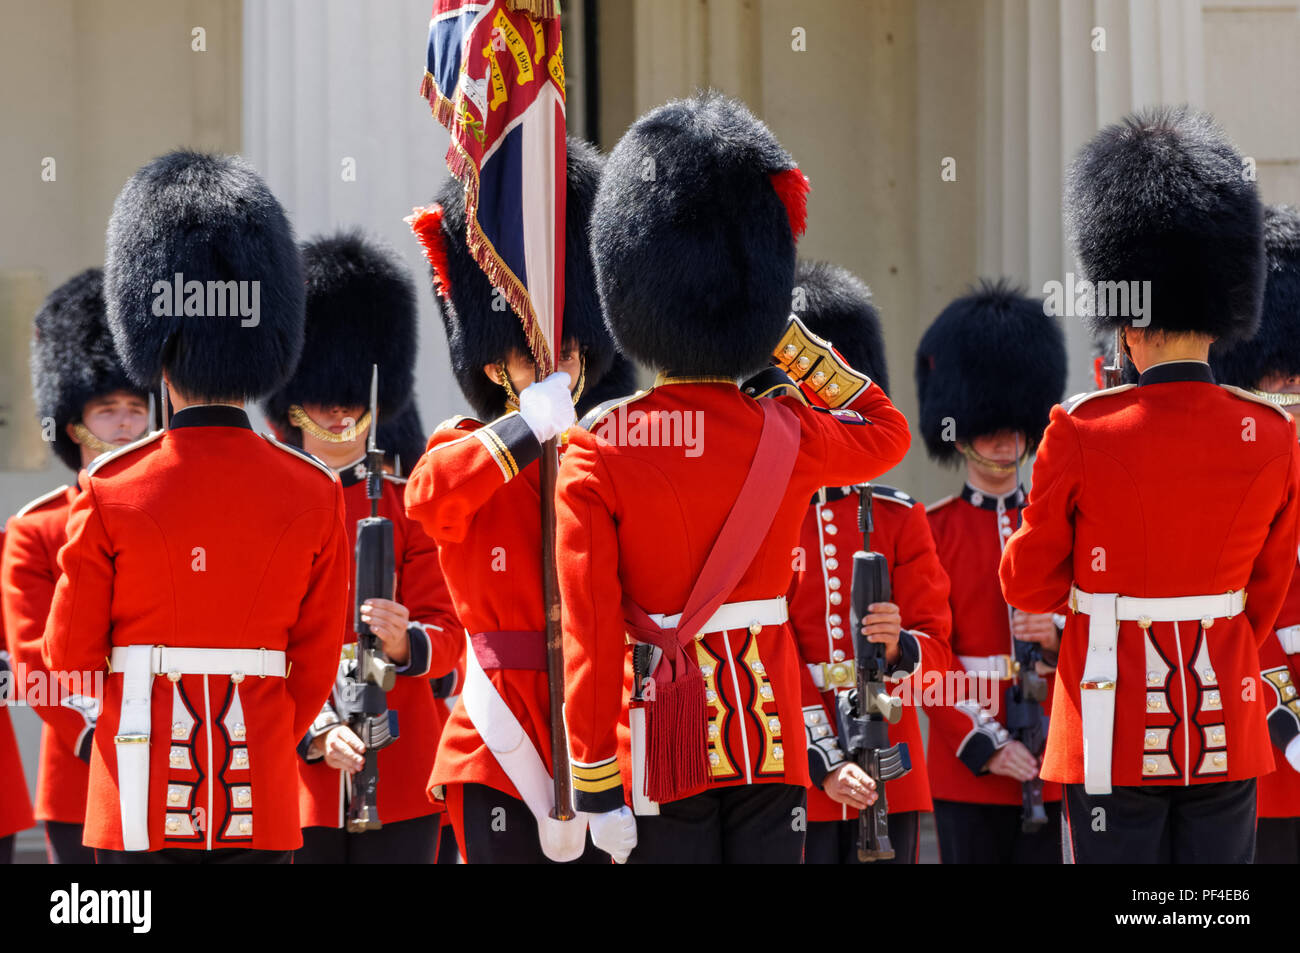 Cérémonie de la relève de la garde à l'extérieur de Buckingham Palace, Londres Angleterre Royaume-Uni UK Banque D'Images